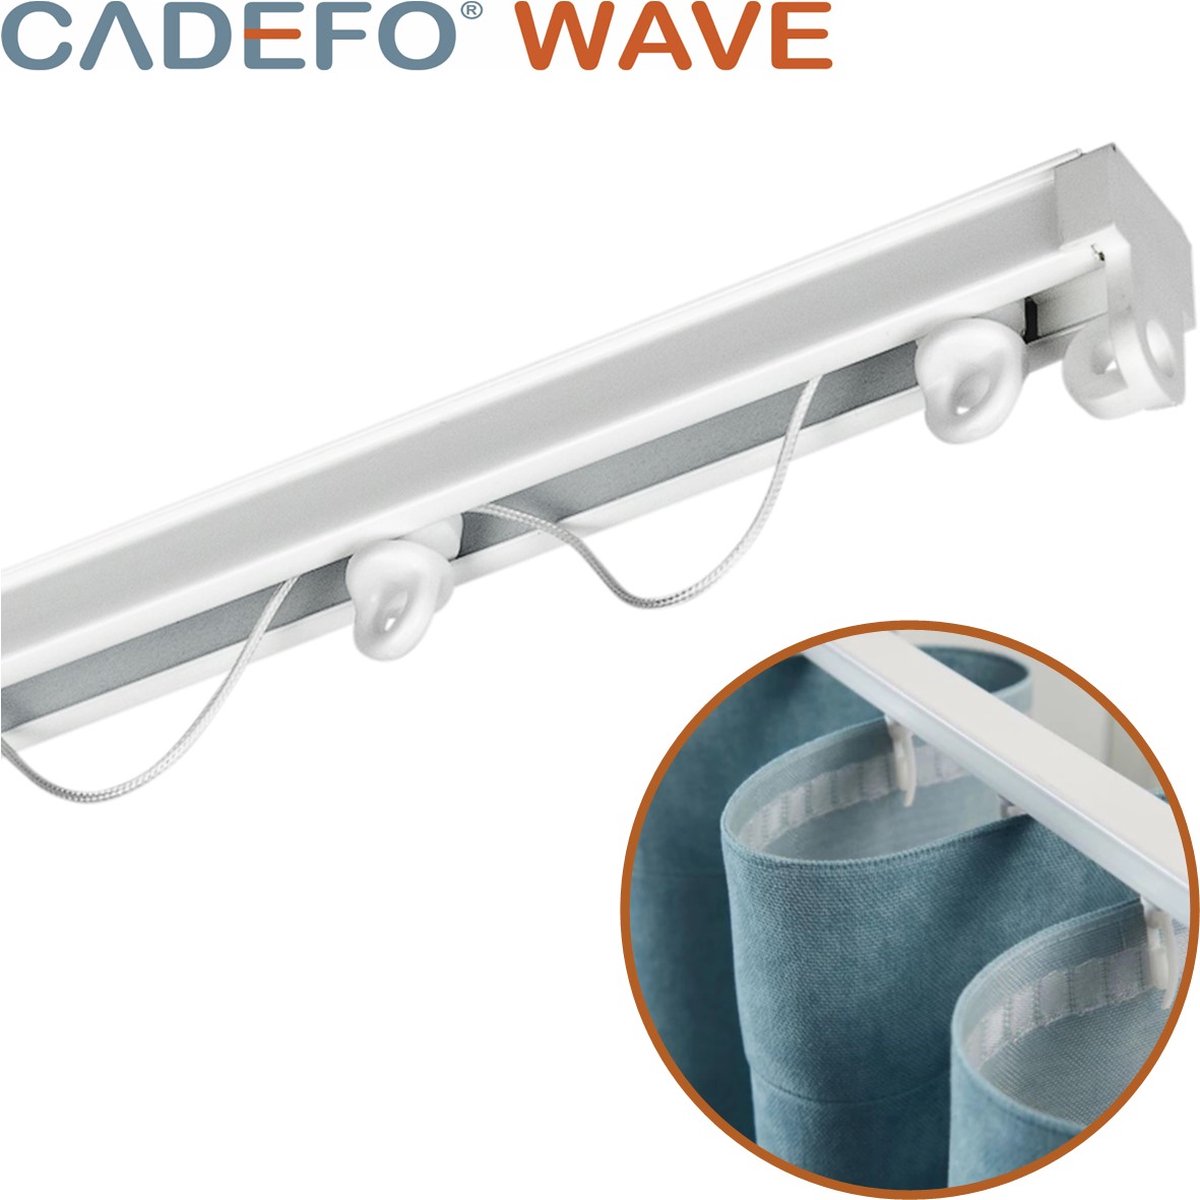 CADEFO WAVE (451 - 500 cm) Gordijnrails - Compleet op maat! - UIT 1 STUK - Leverbaar tot 6 meter - Plafondbevestiging - Lengte 473 cm